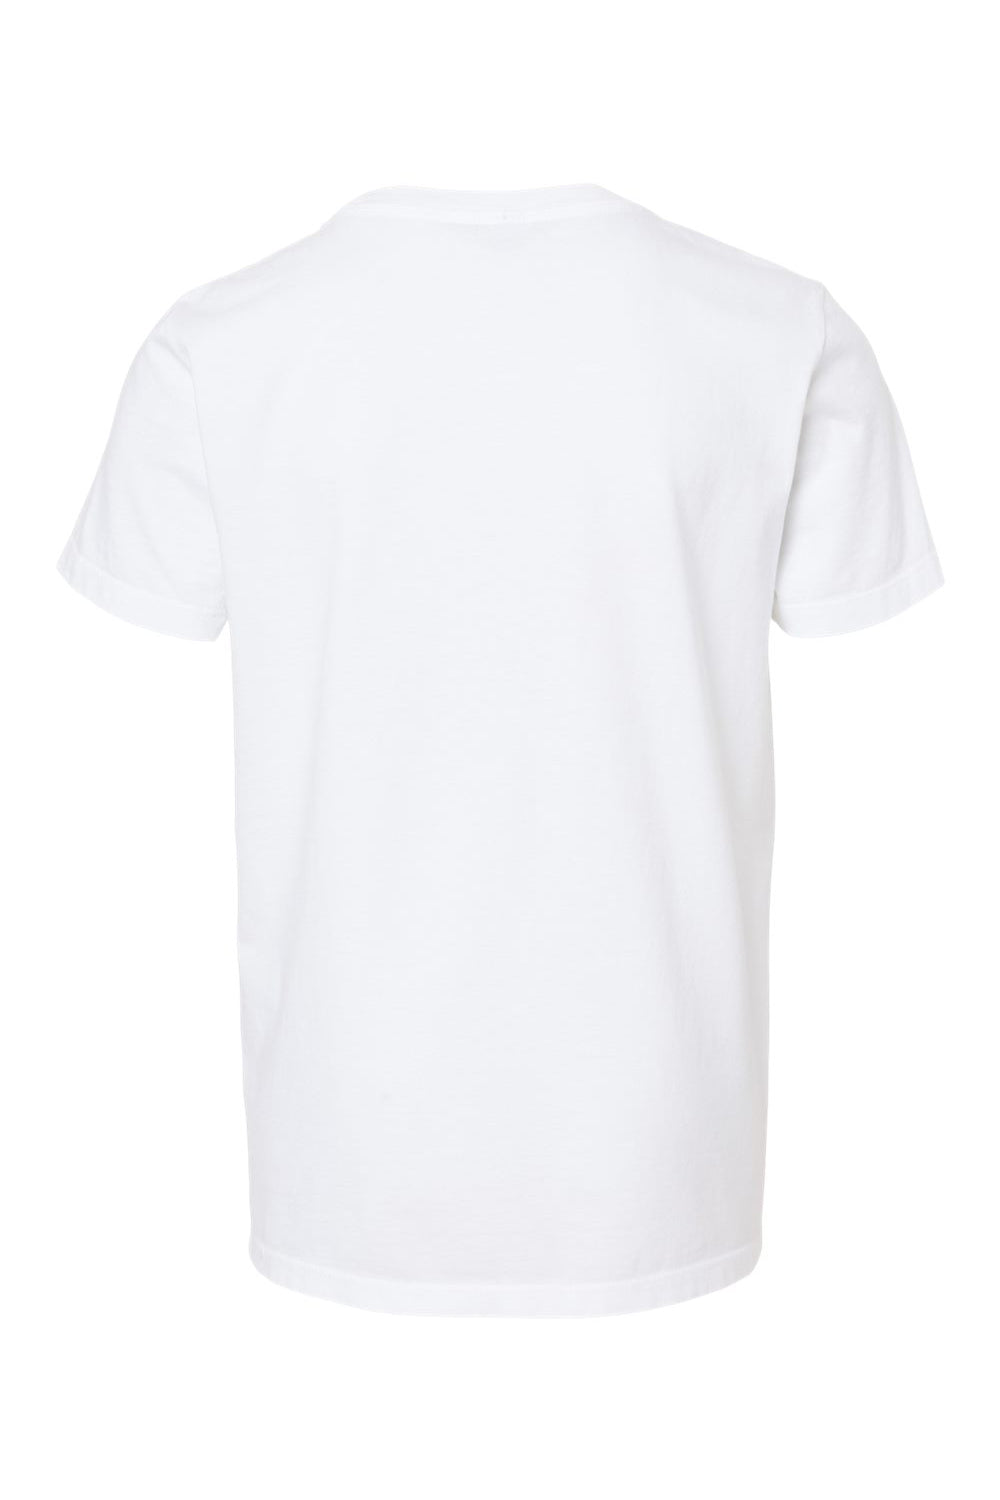 SoftShirts 402 Youth Organic Short Sleeve Crewneck T-Shirt White Flat Back